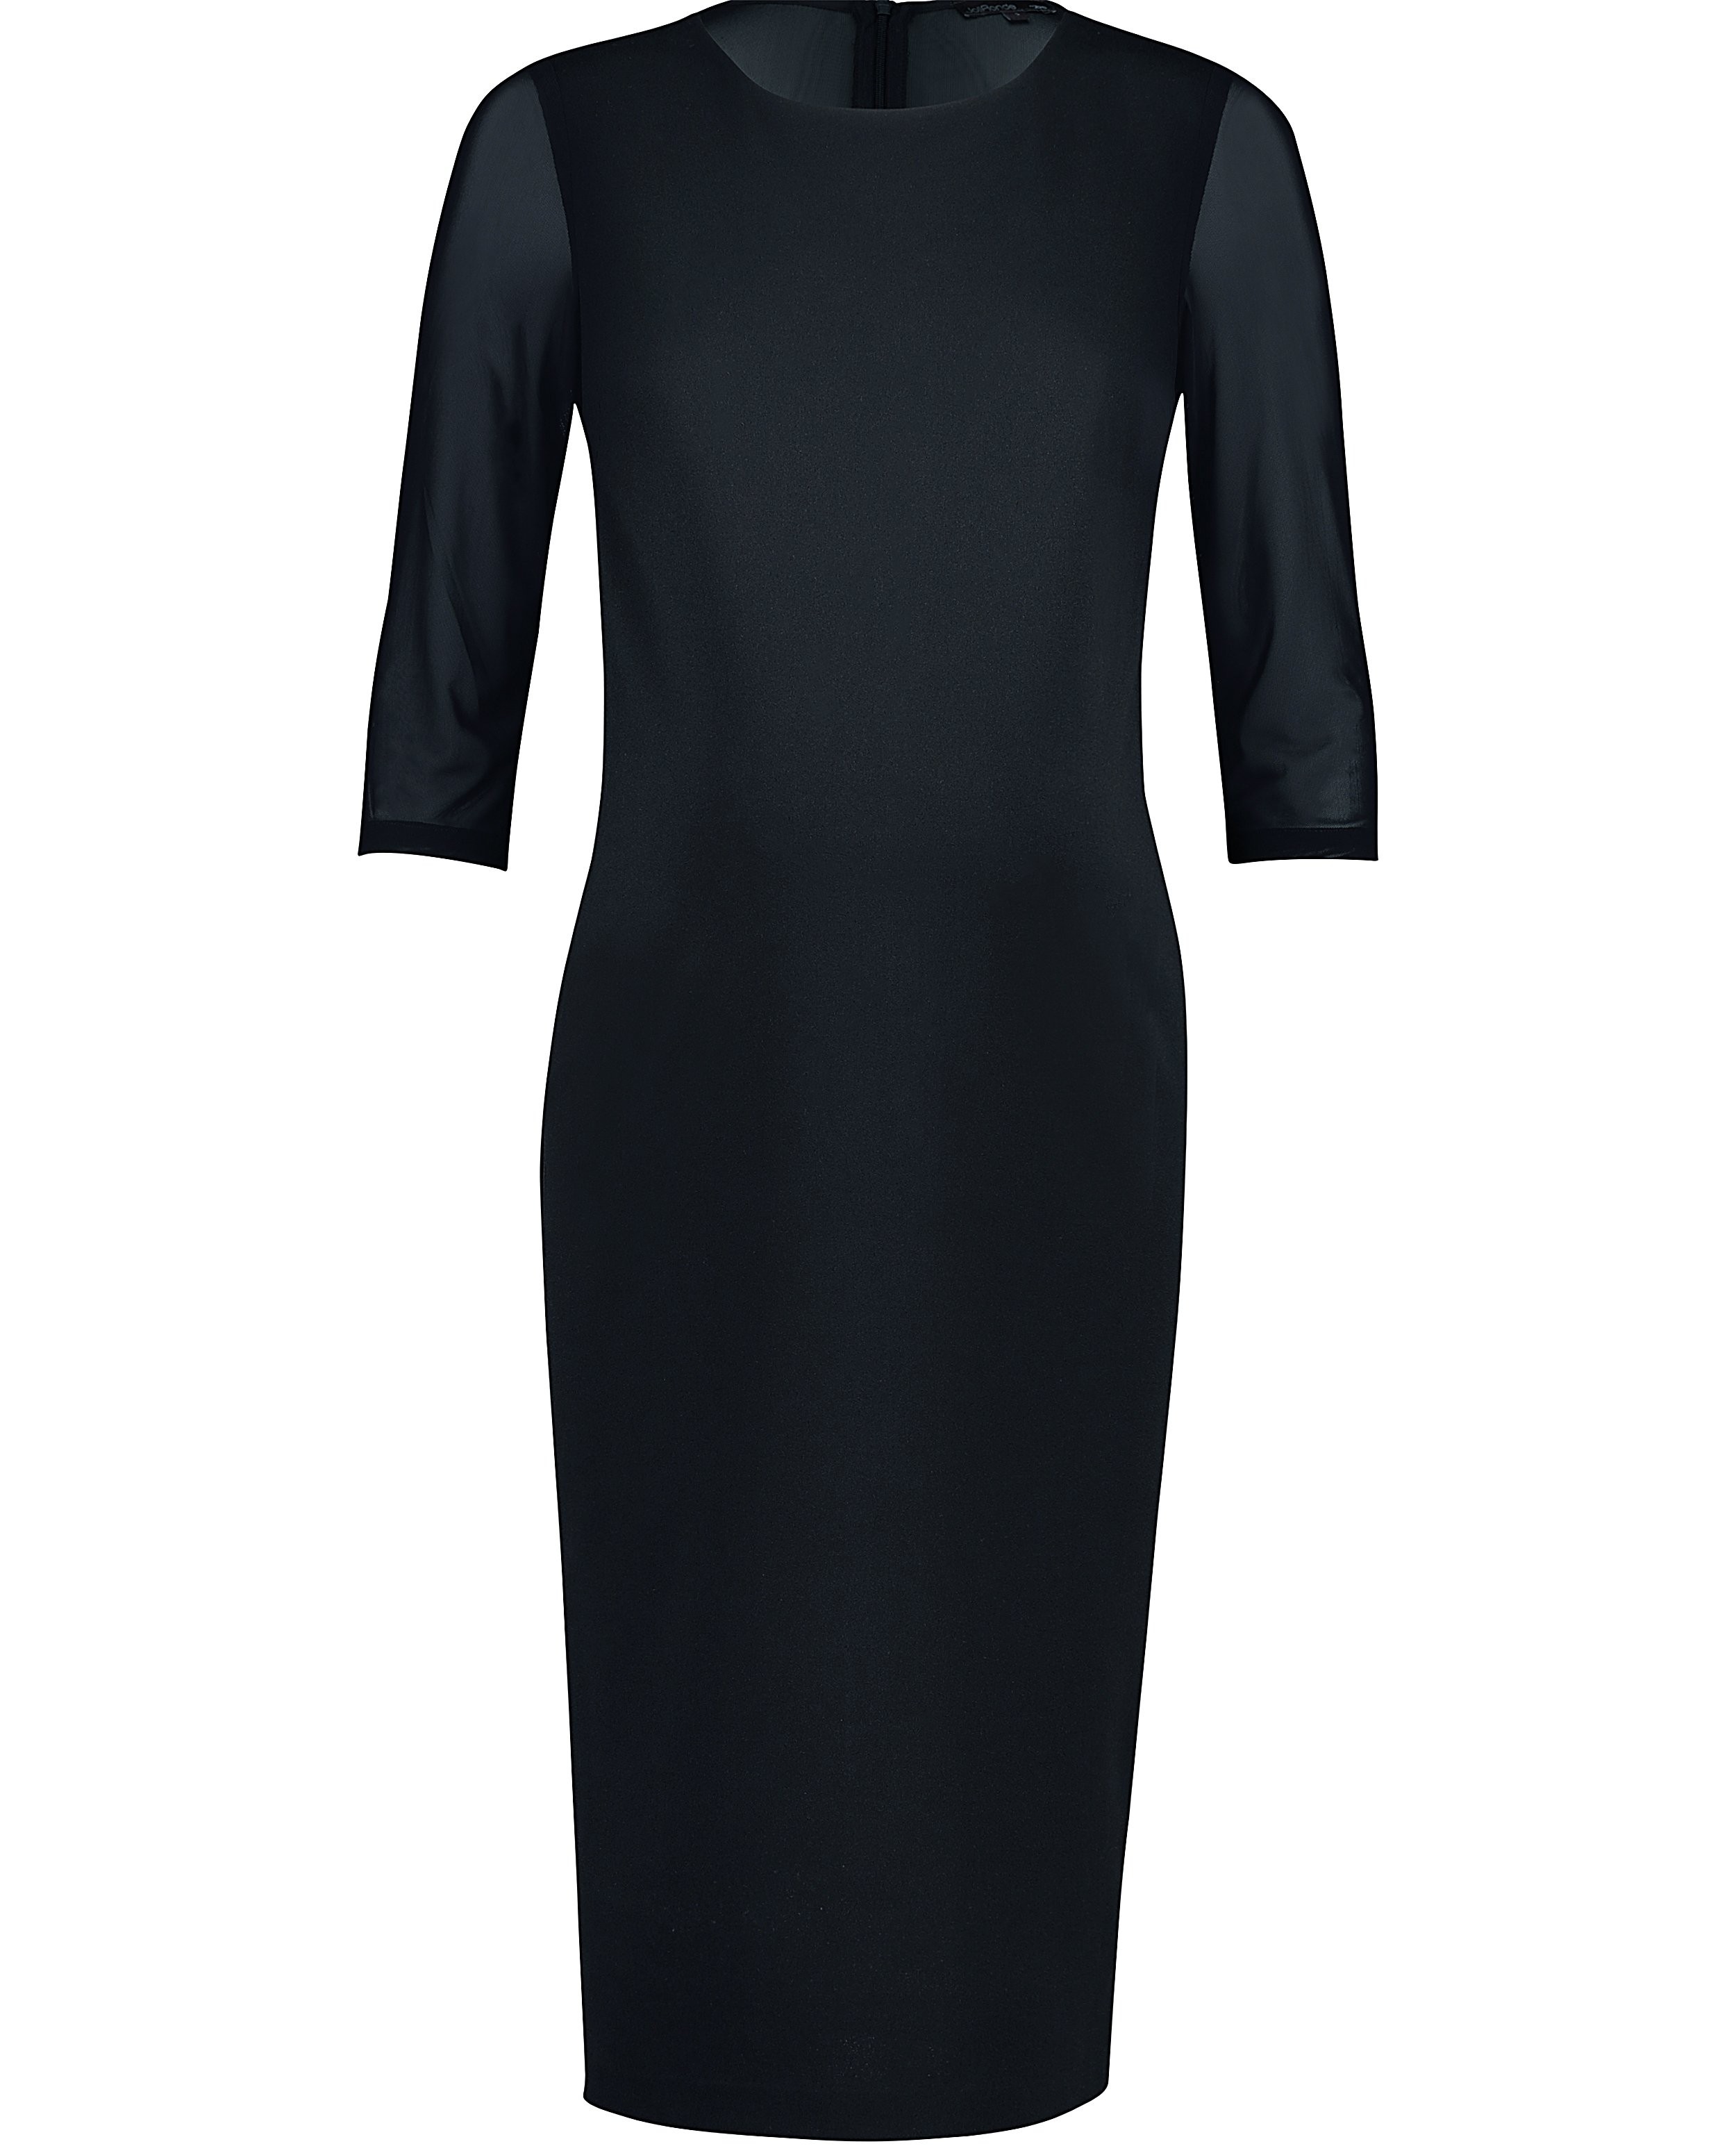 Robe noire stretchy - détails en tulle - Joli Ronde